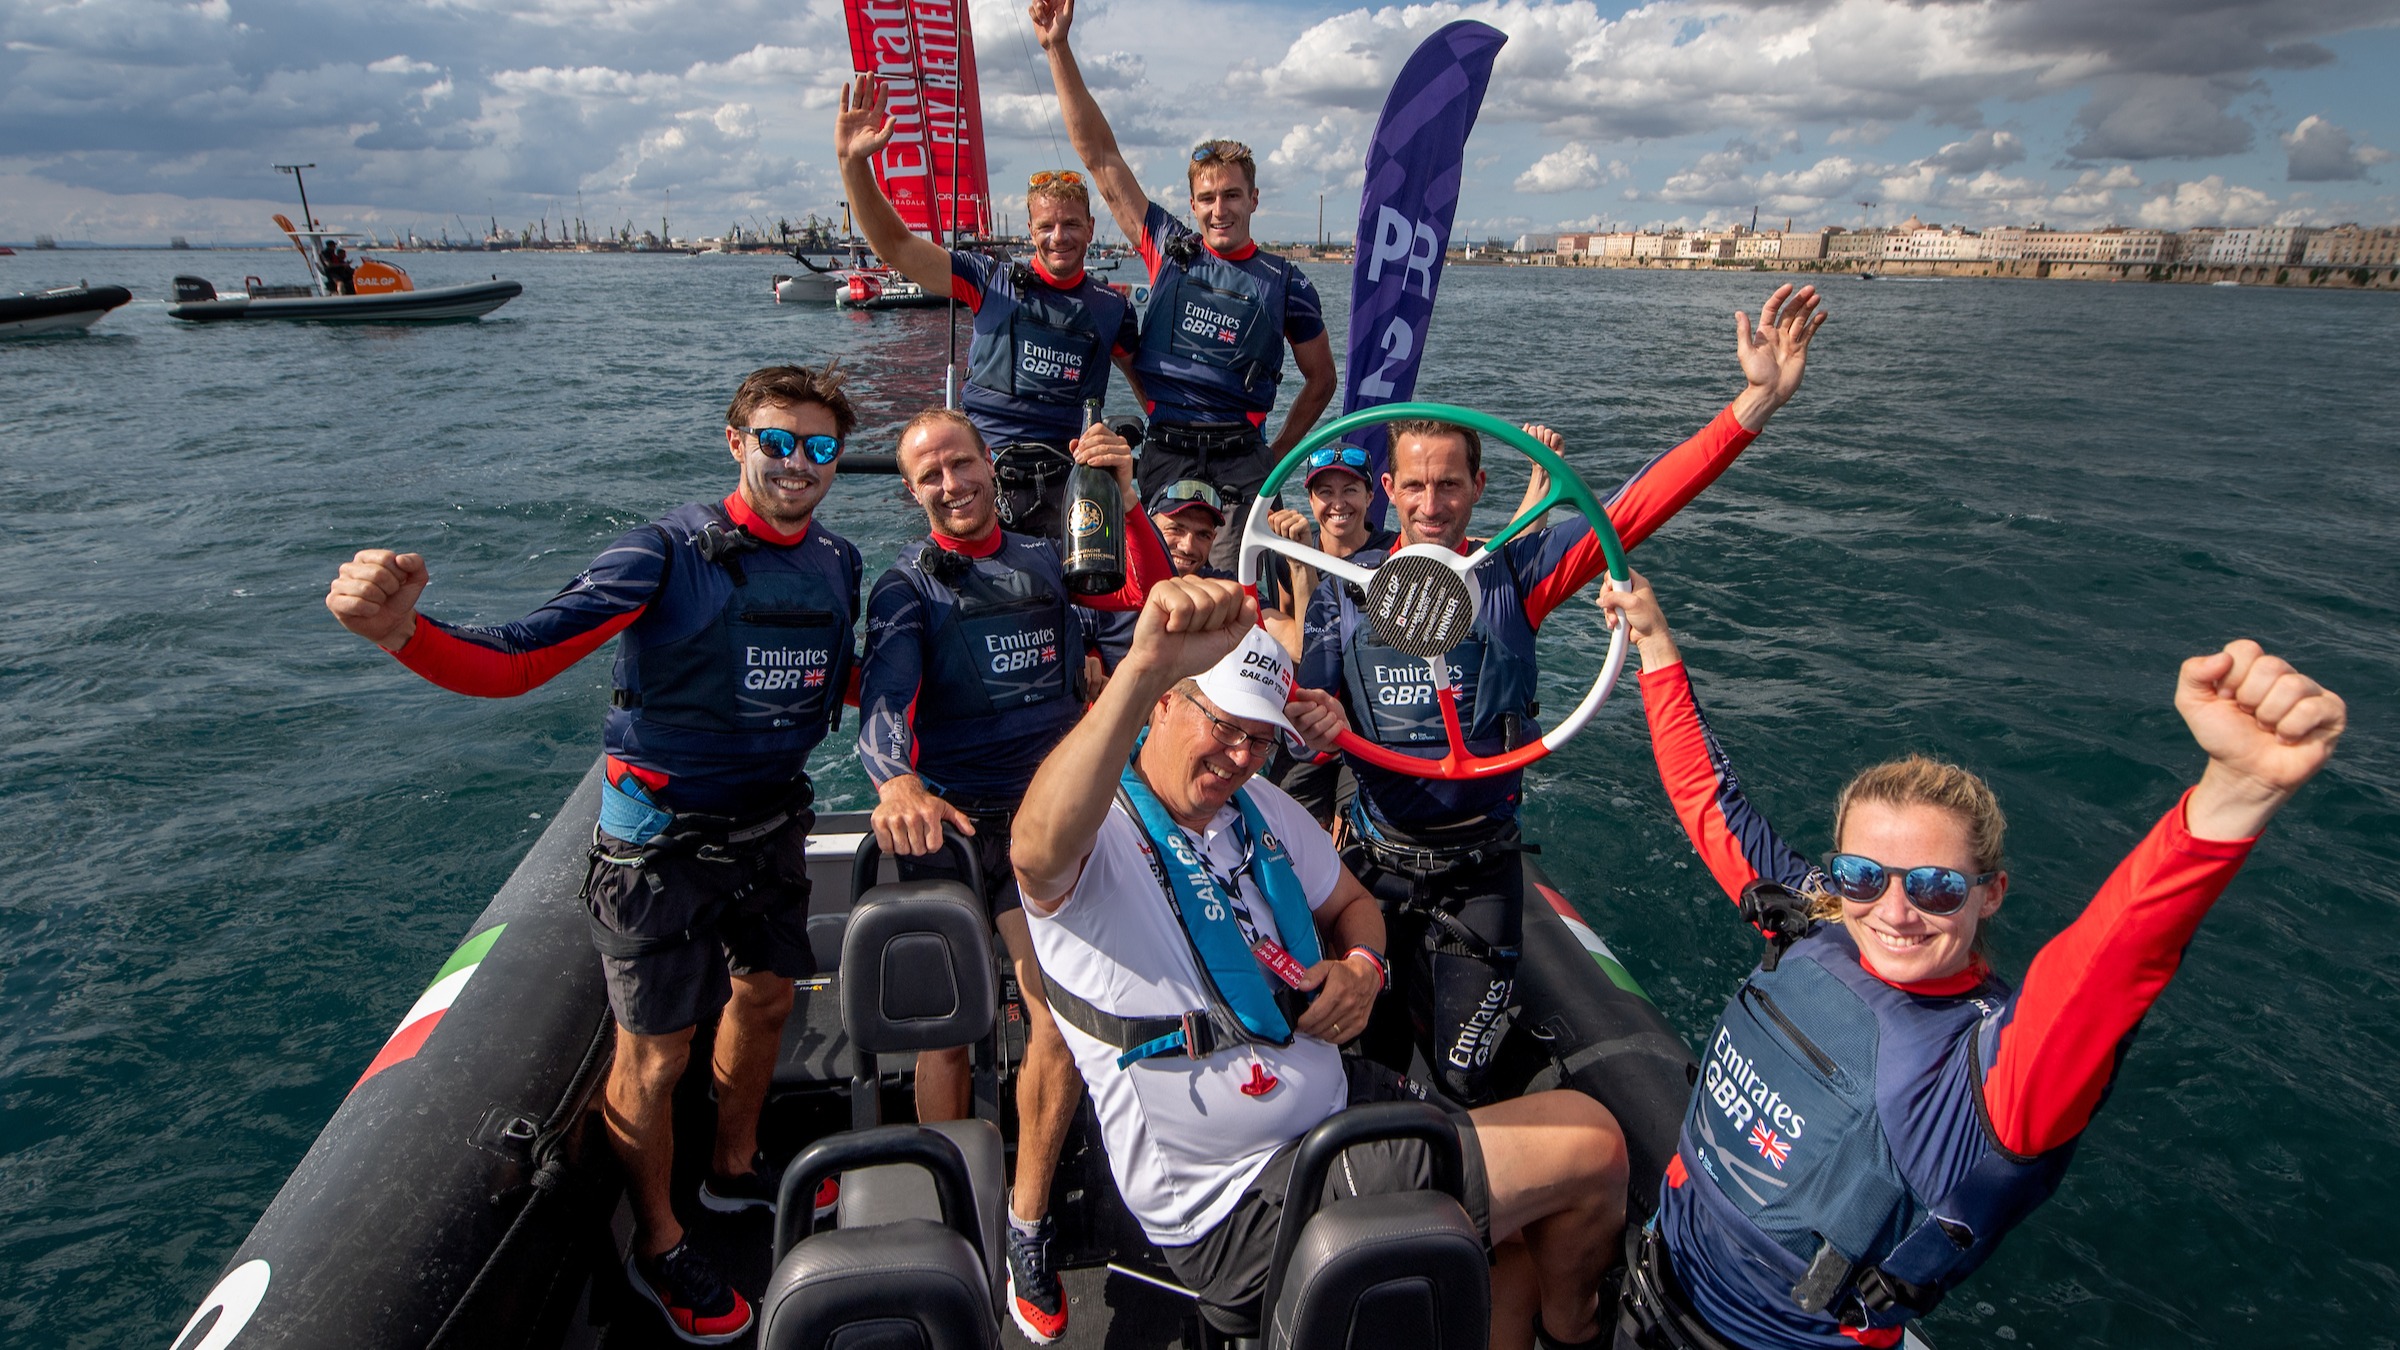 Saison 4 // Emirates GBR célèbre la victoire de Taranto depuis le bateau de chasse de l'équipe 